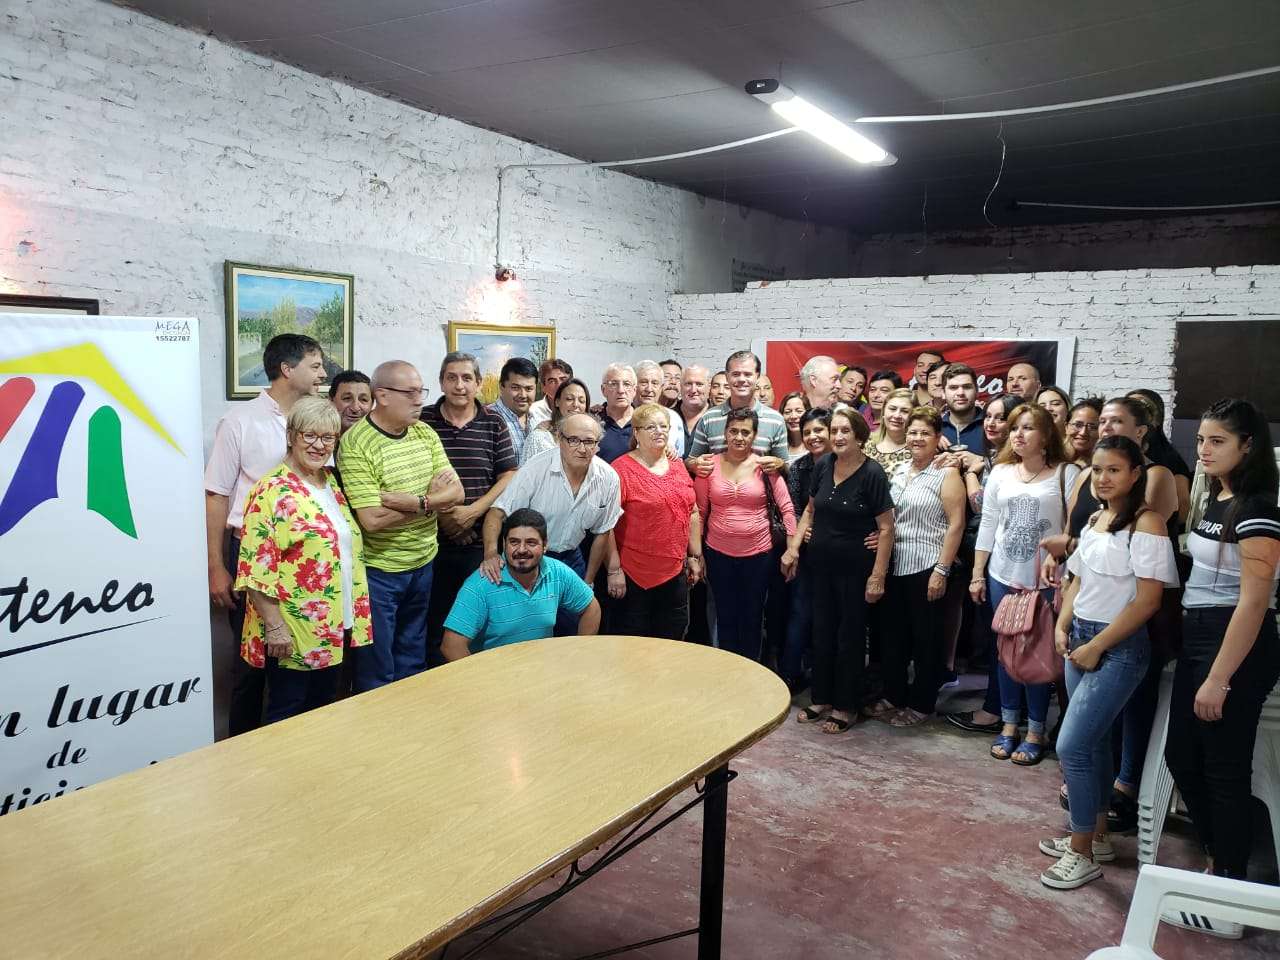 El Ateneo Gualeguaychú anunció el apoyo a la candidatura de Piaggio 